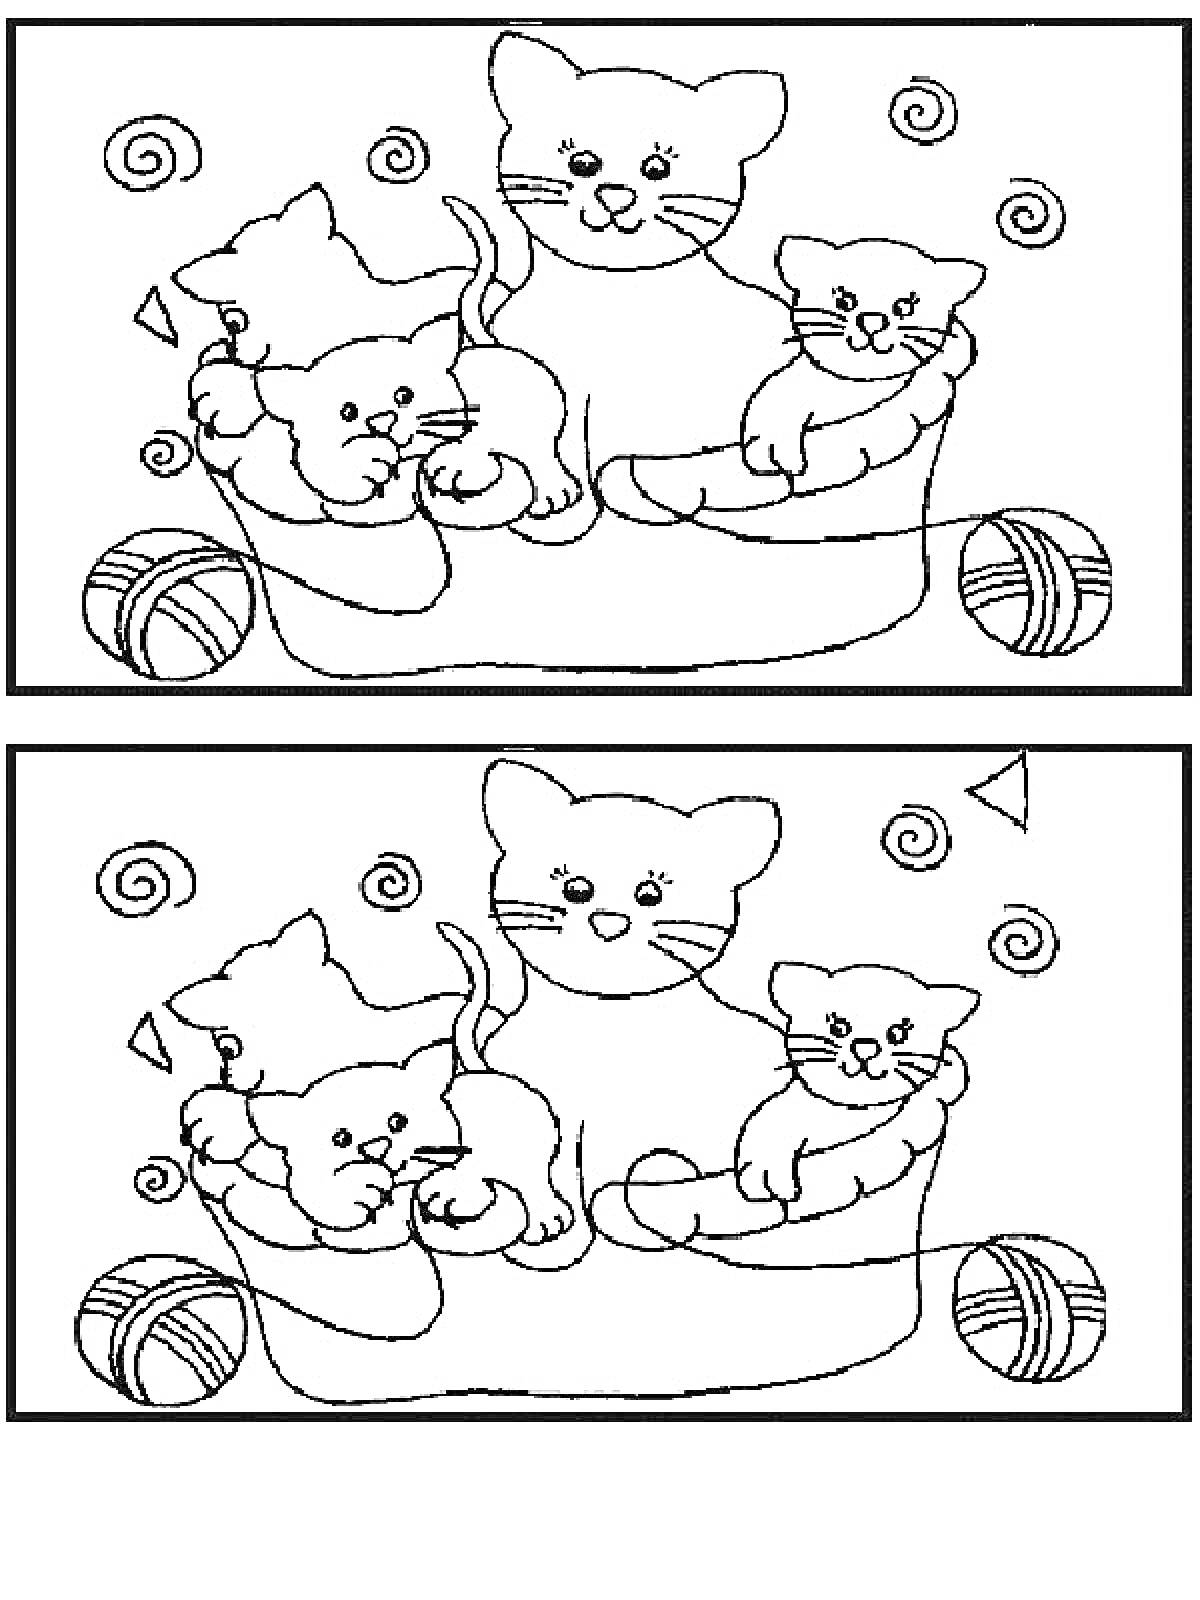 Раскраска Семья кошек в люльке с клубками и завитками - найдите отличия